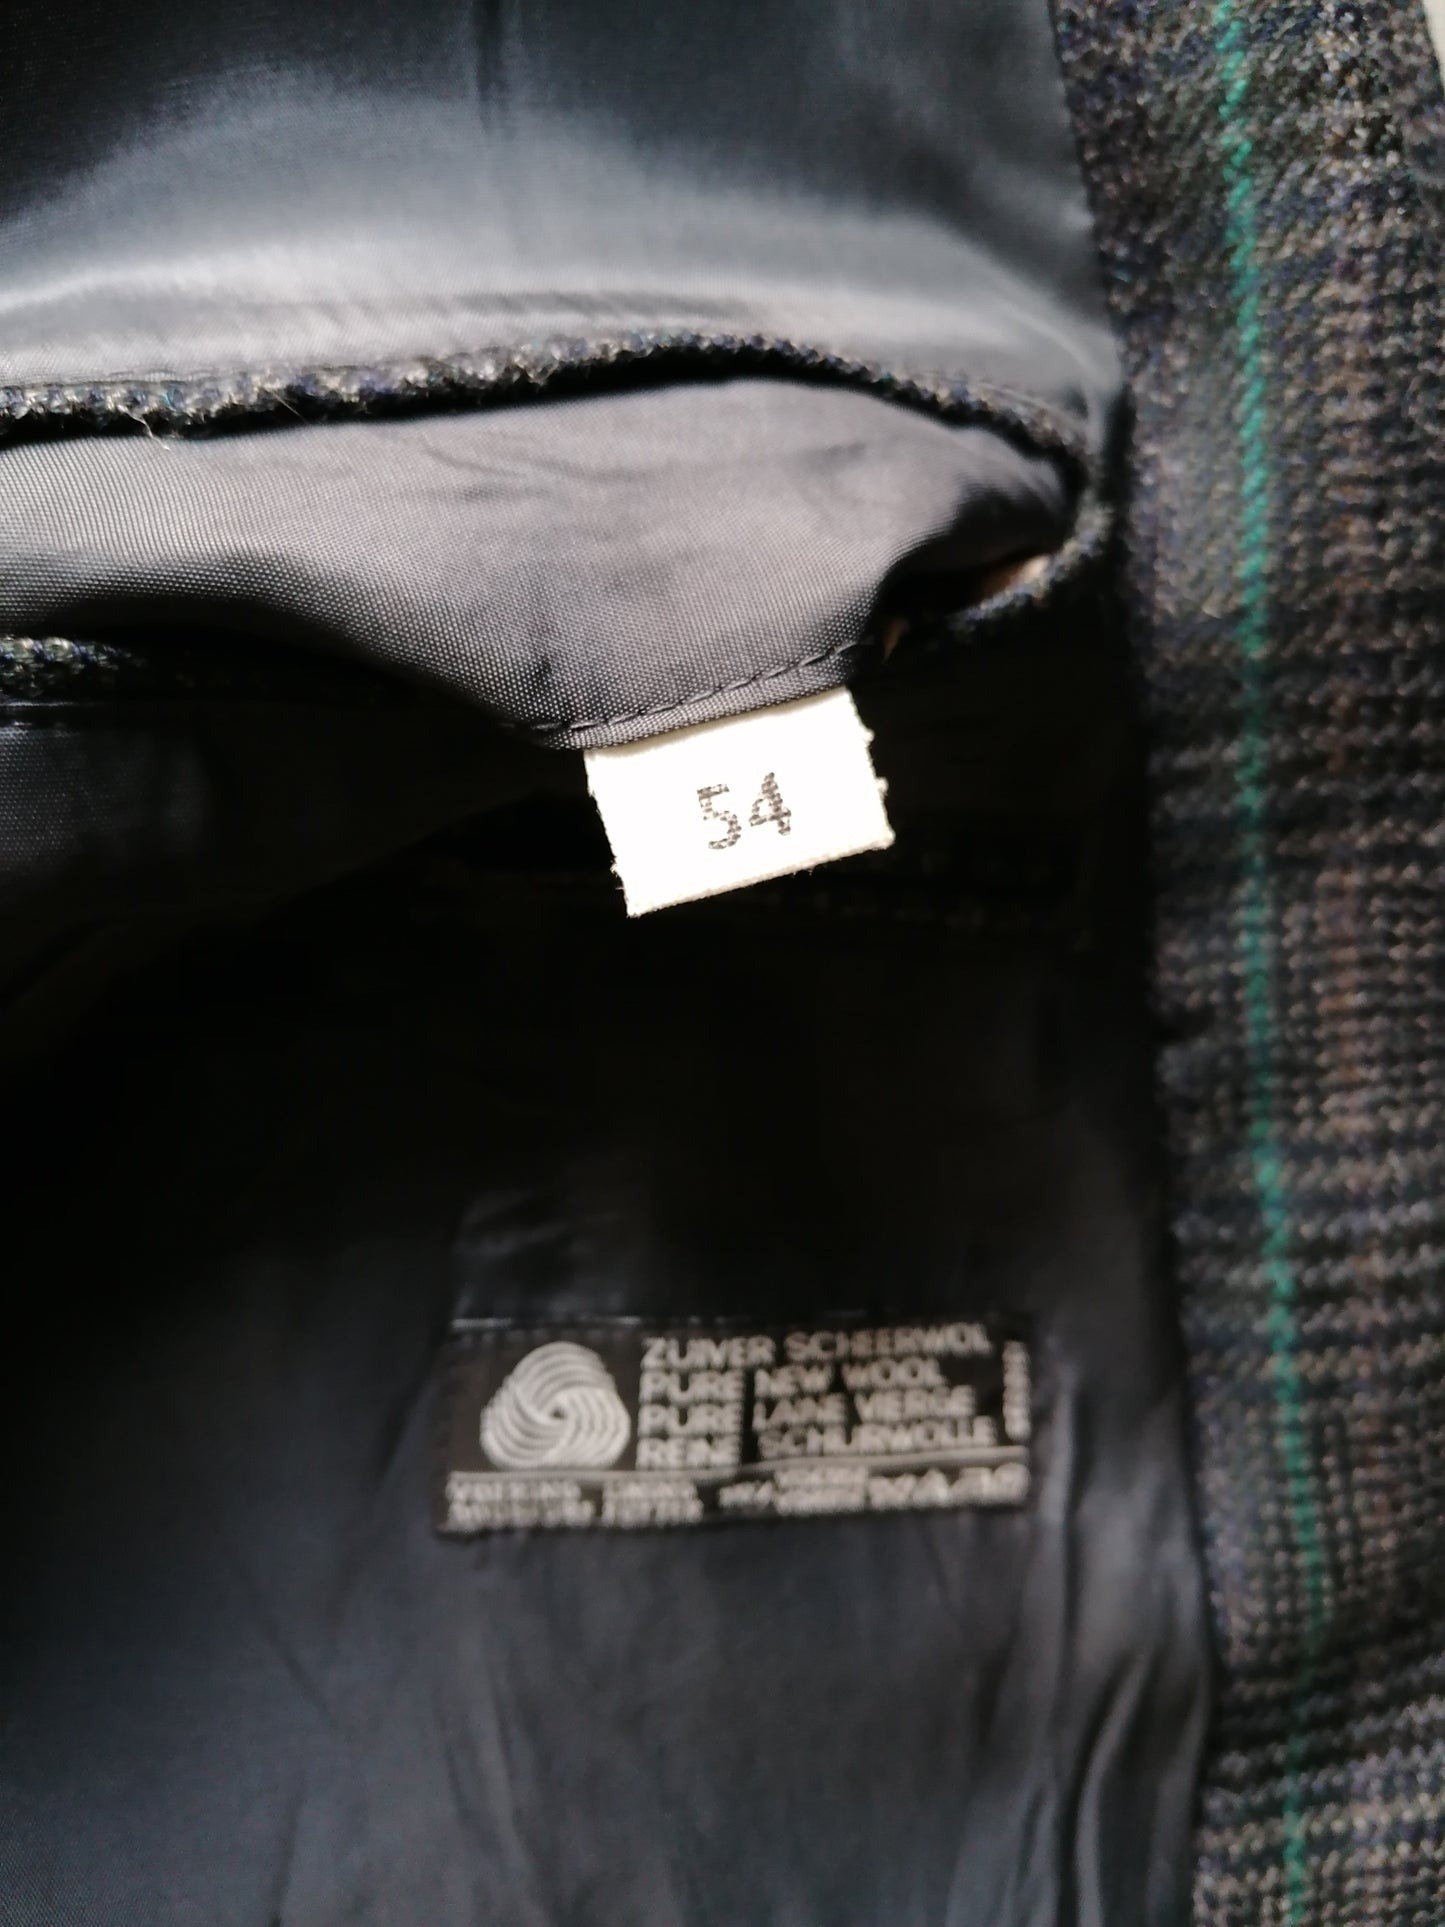 Vintage Woolen Tweed Chaqueta. Gris verde negro a cuadros. Tamaño XL